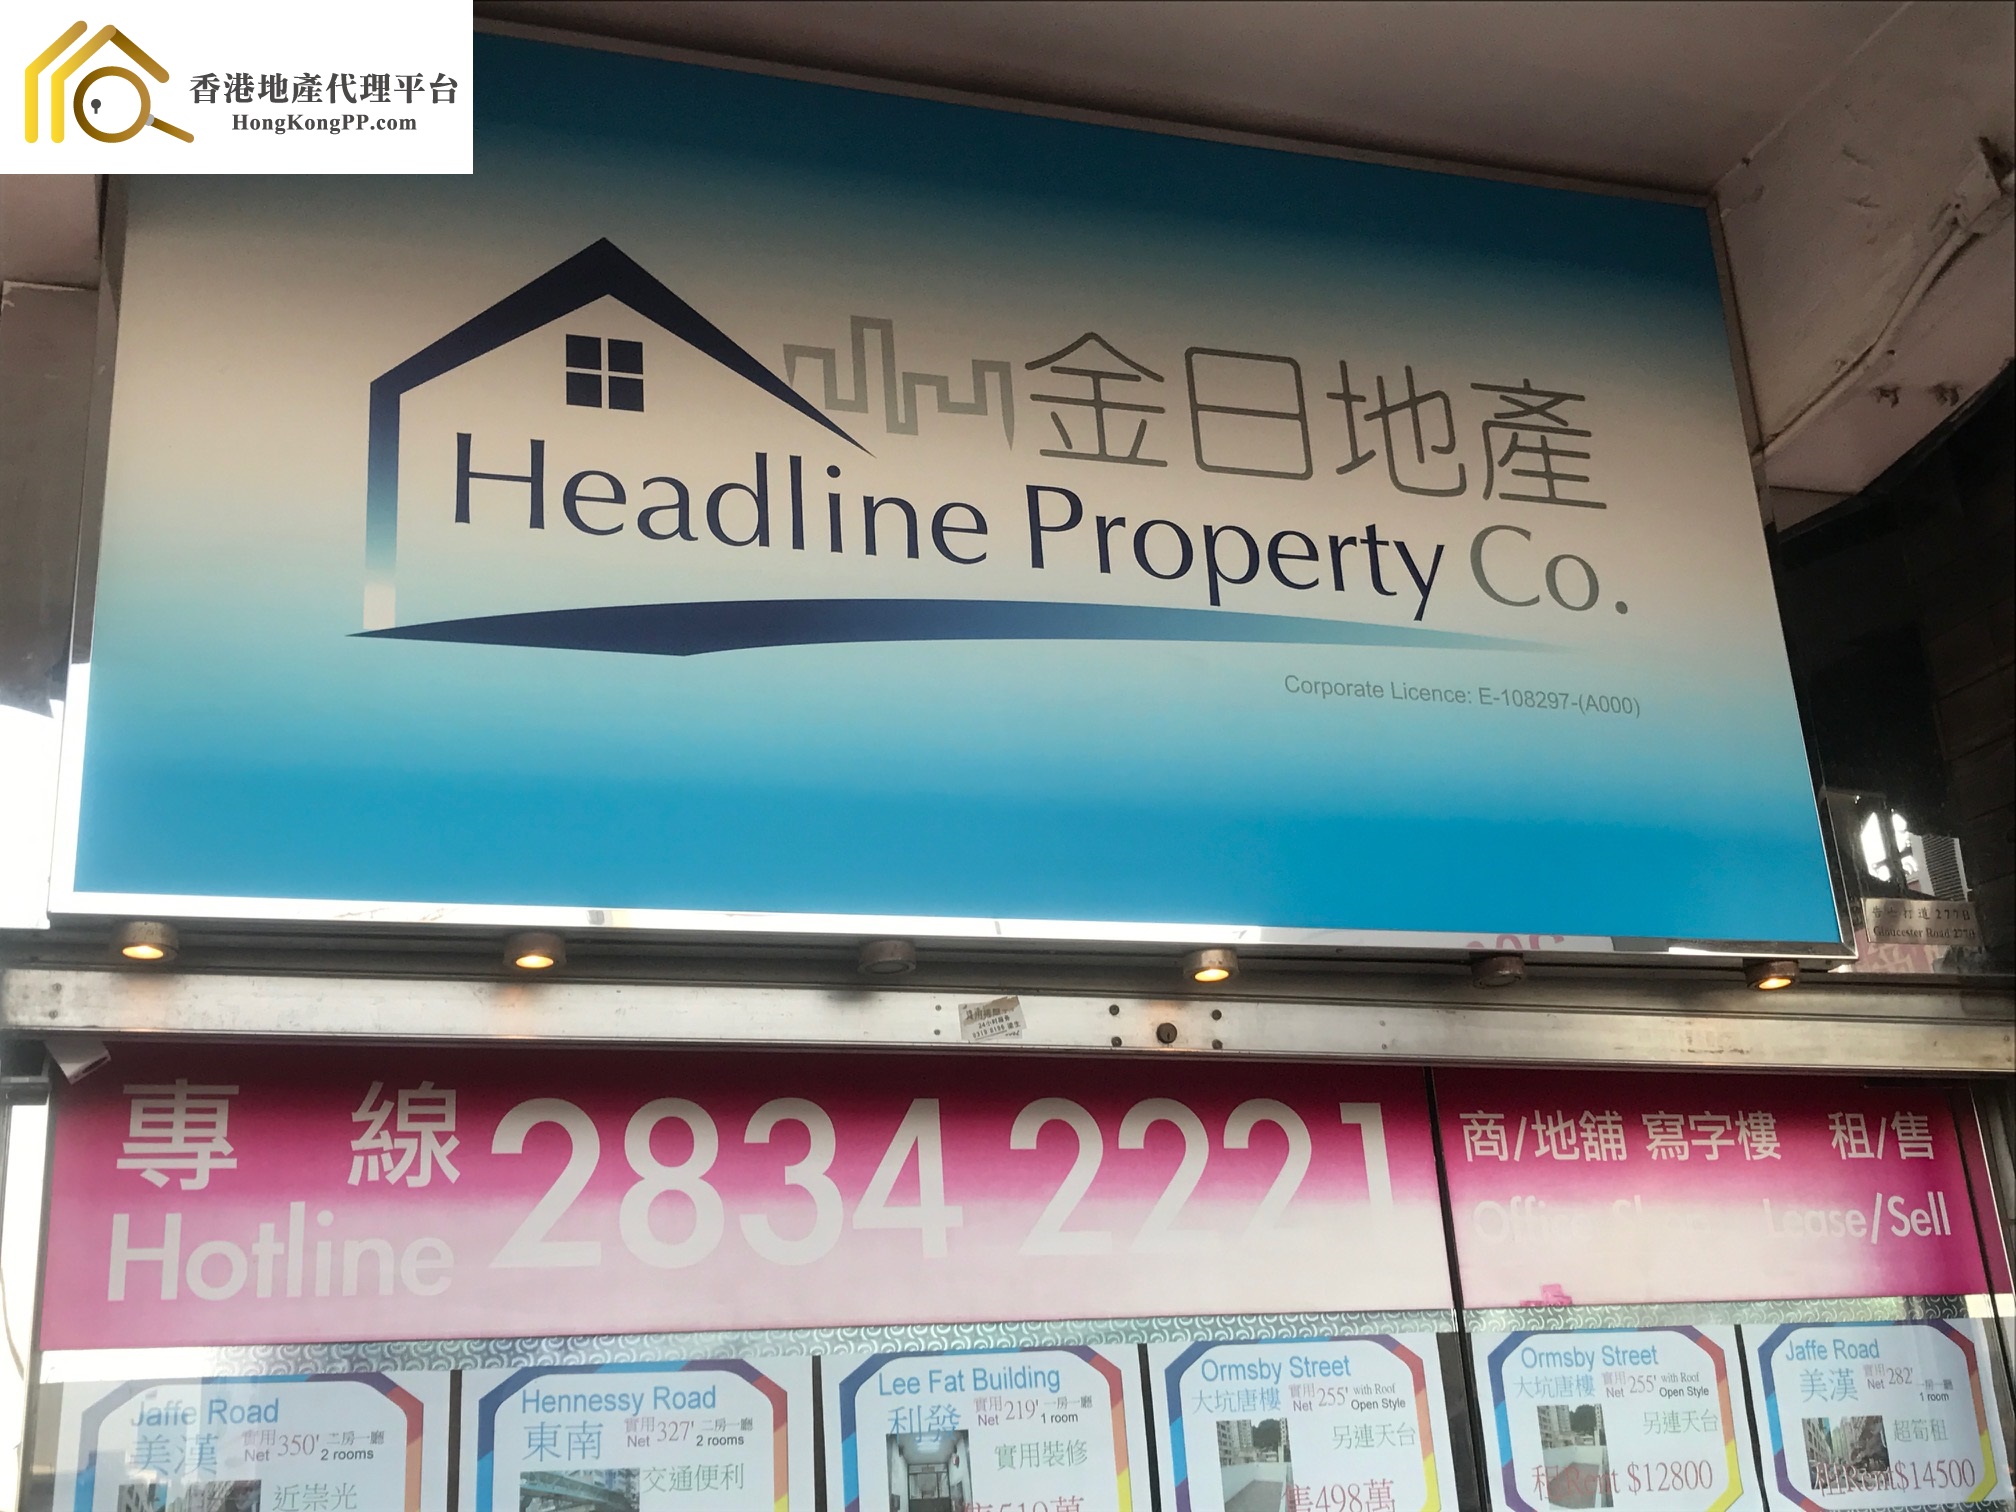 商舖地產代理: 金日地產 Headline Property